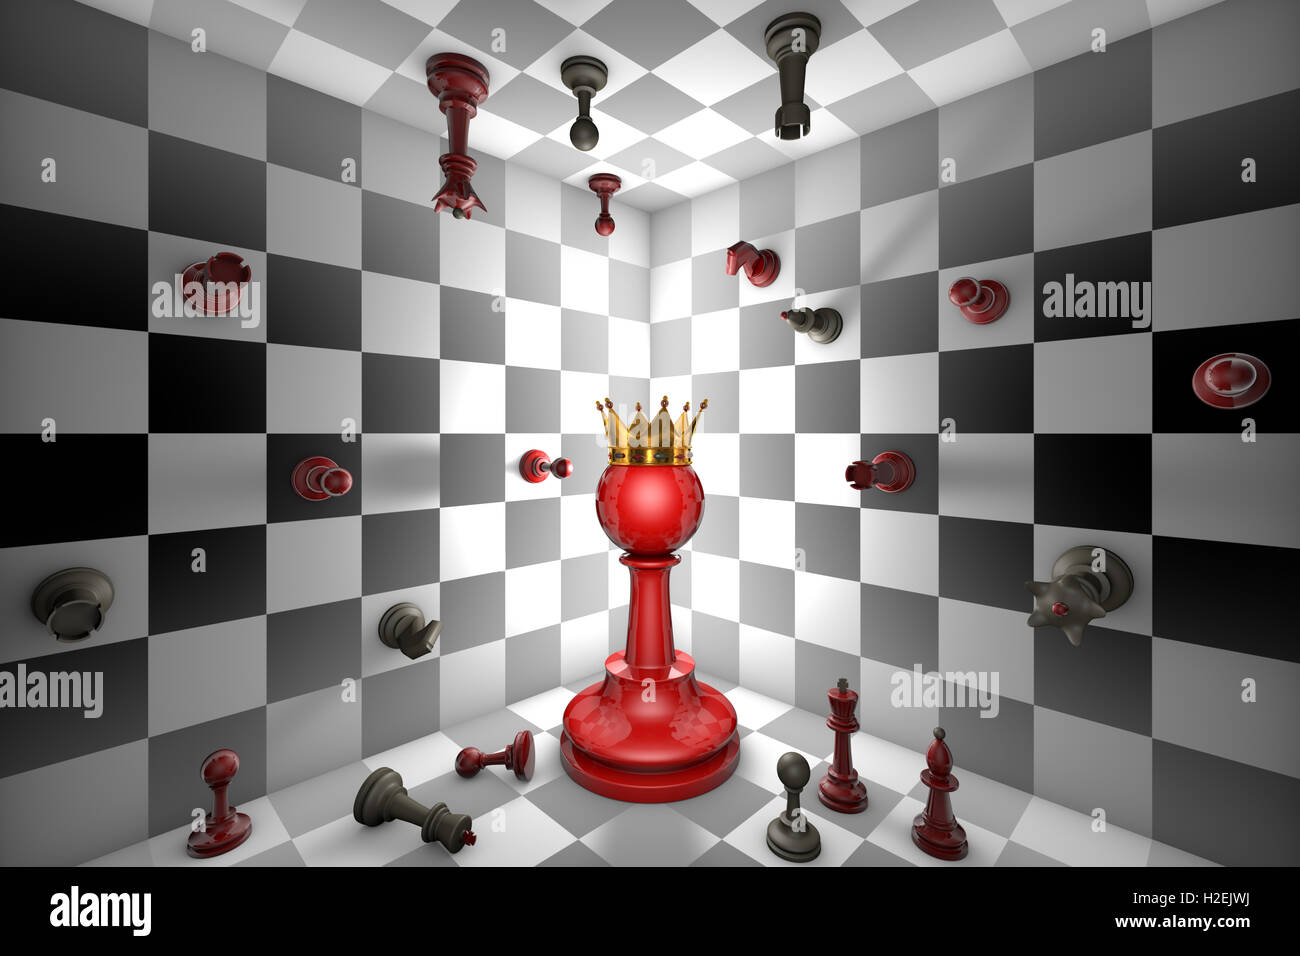 Peón rojo grande y una corona de oro. Cerrado el espacio de ajedrez. Muchos pequeños de ajedrez. Ilustración 3D Render Foto de stock